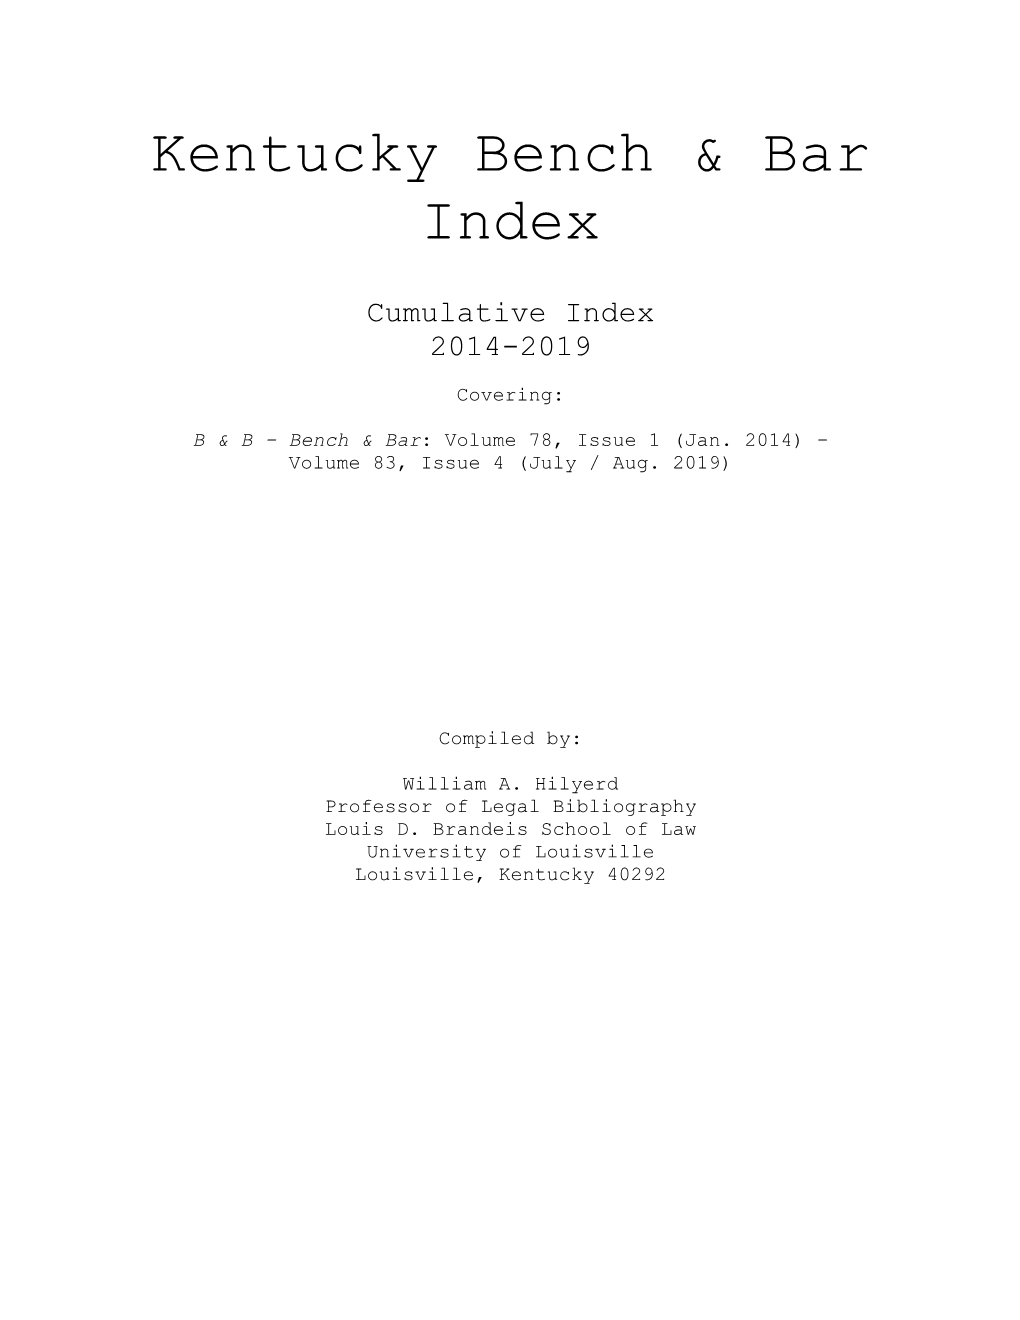 Kentucky Bench and Bar Index – 2014-2019